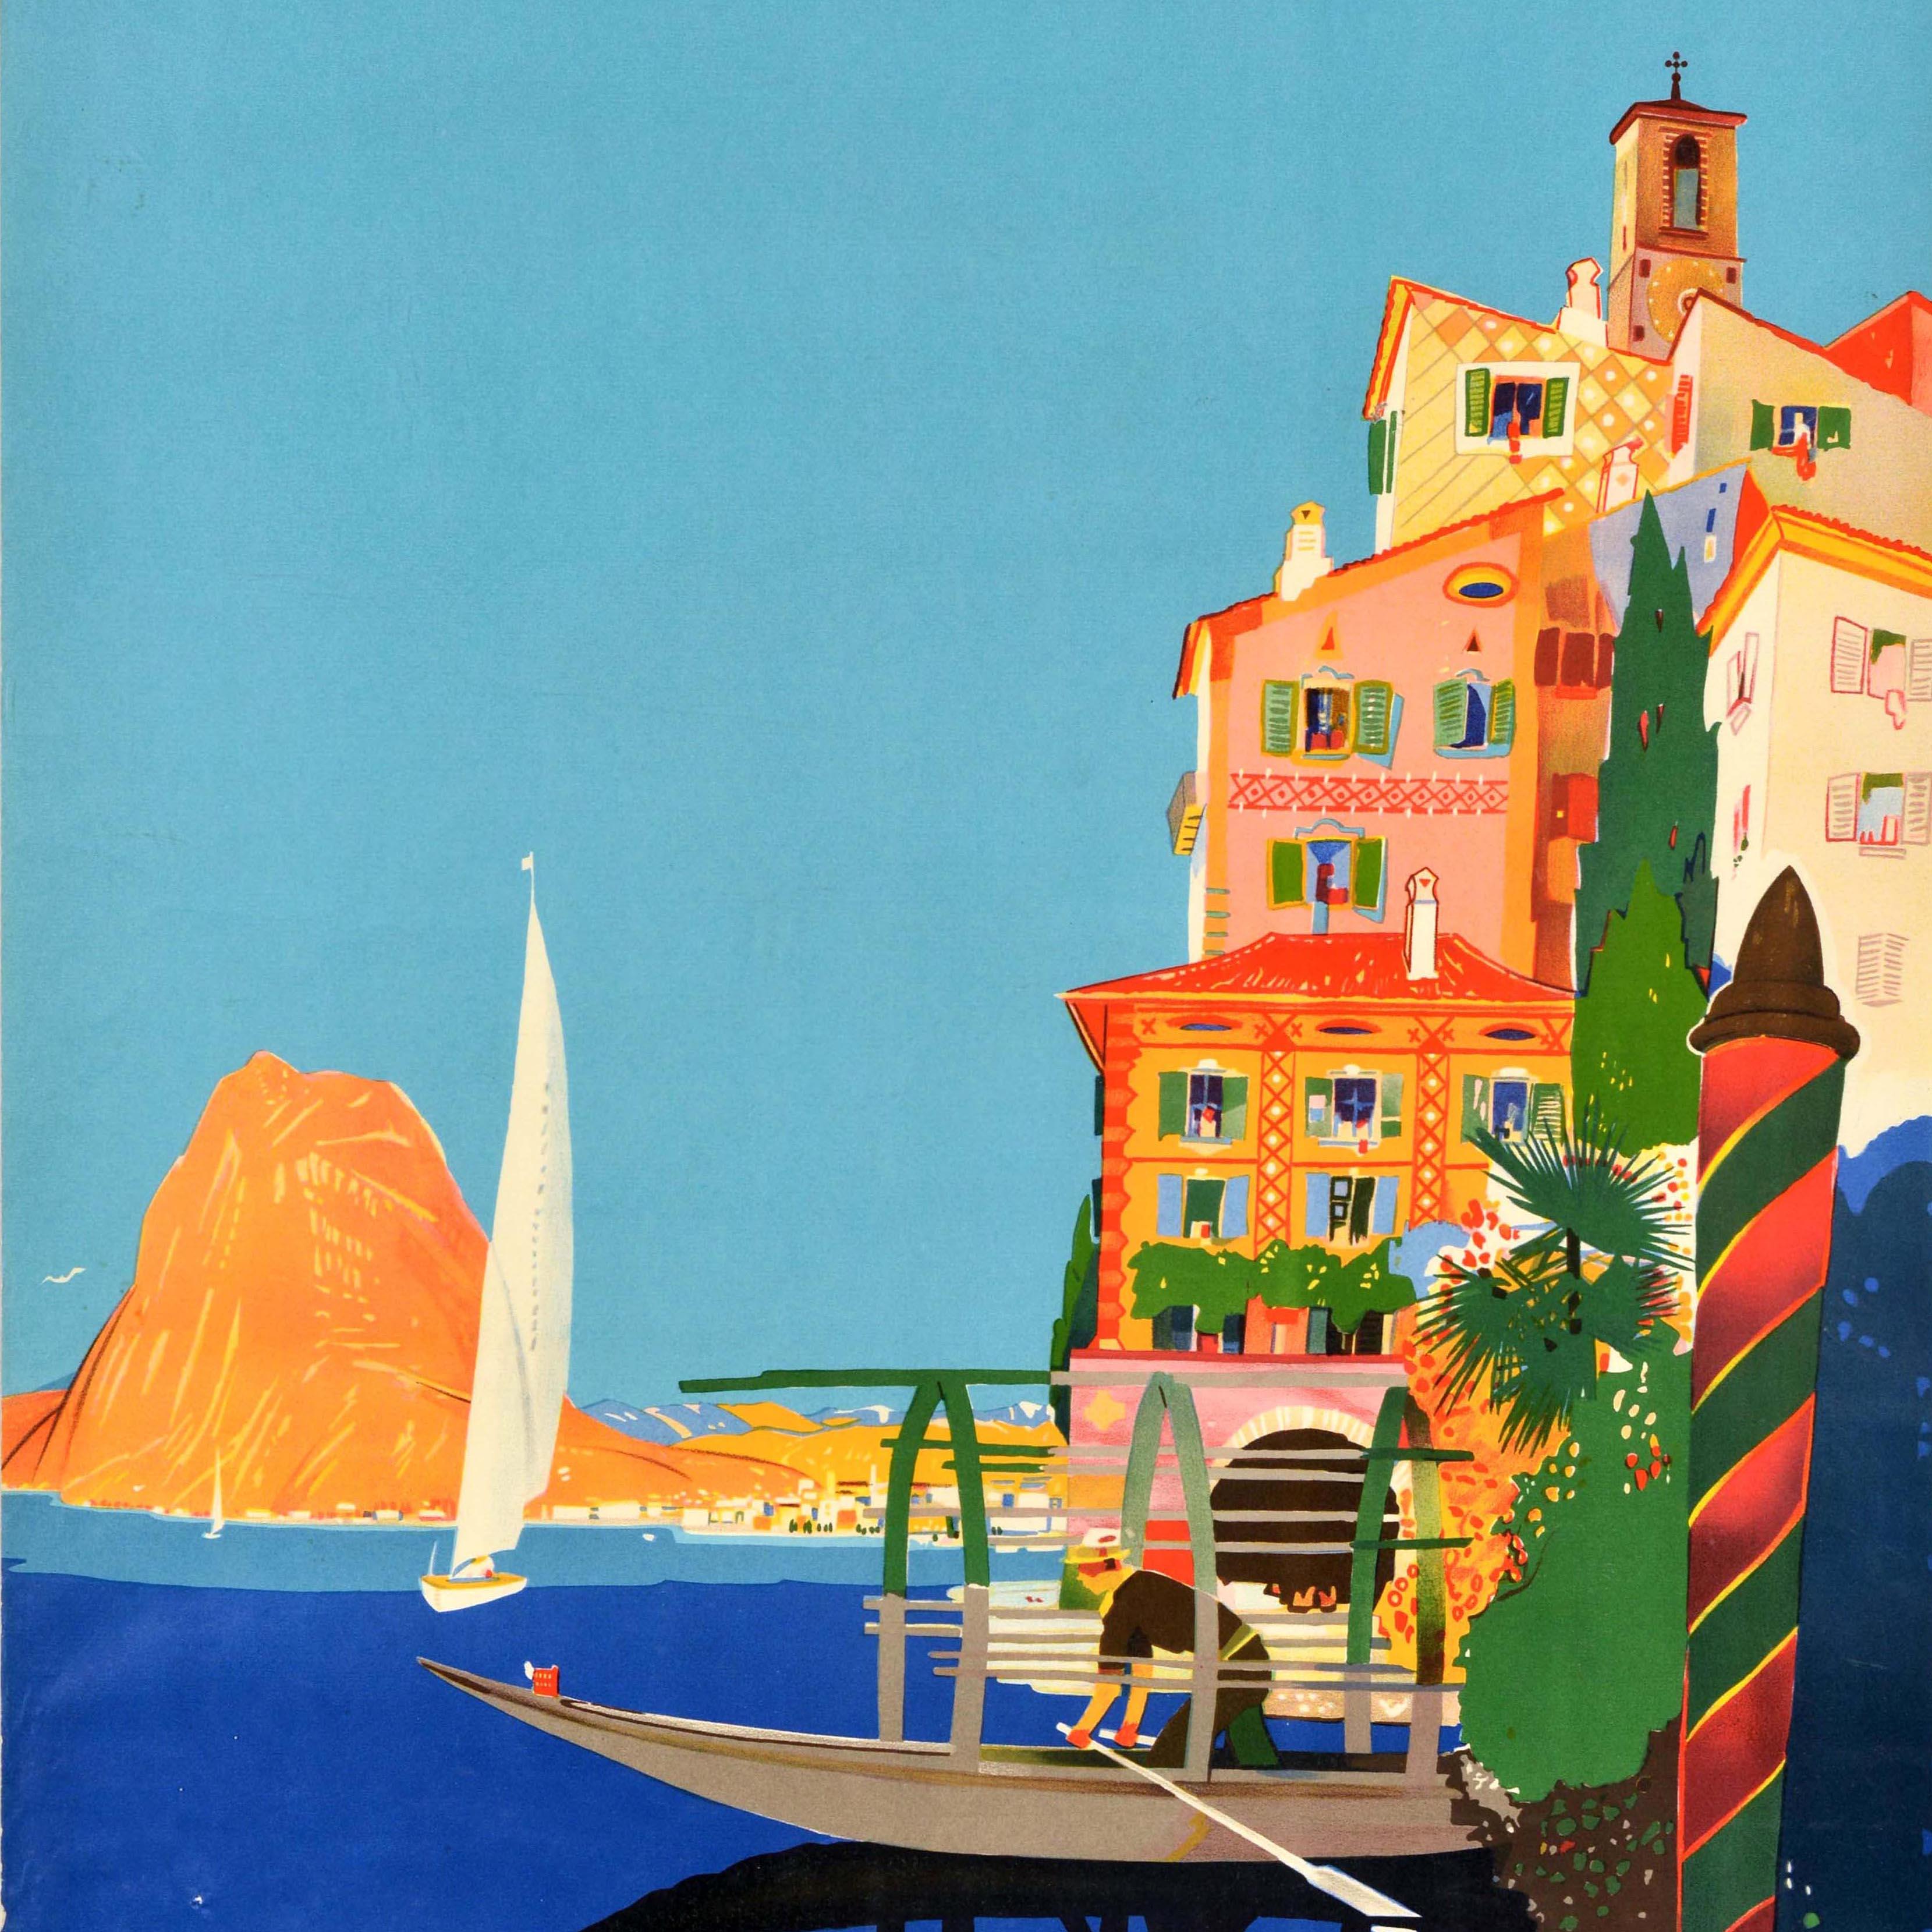 Original Vintage-Reiseplakat für Lugano in der Schweiz mit einem farbenfrohen Bild des Schweizer Künstlers Daniele Buzzi (1890-1974), das einen Mann mit Ruder auf einem Boot zeigt, das sich im tiefblauen Wasser spiegelt, mit Gebäuden und Bäumen am